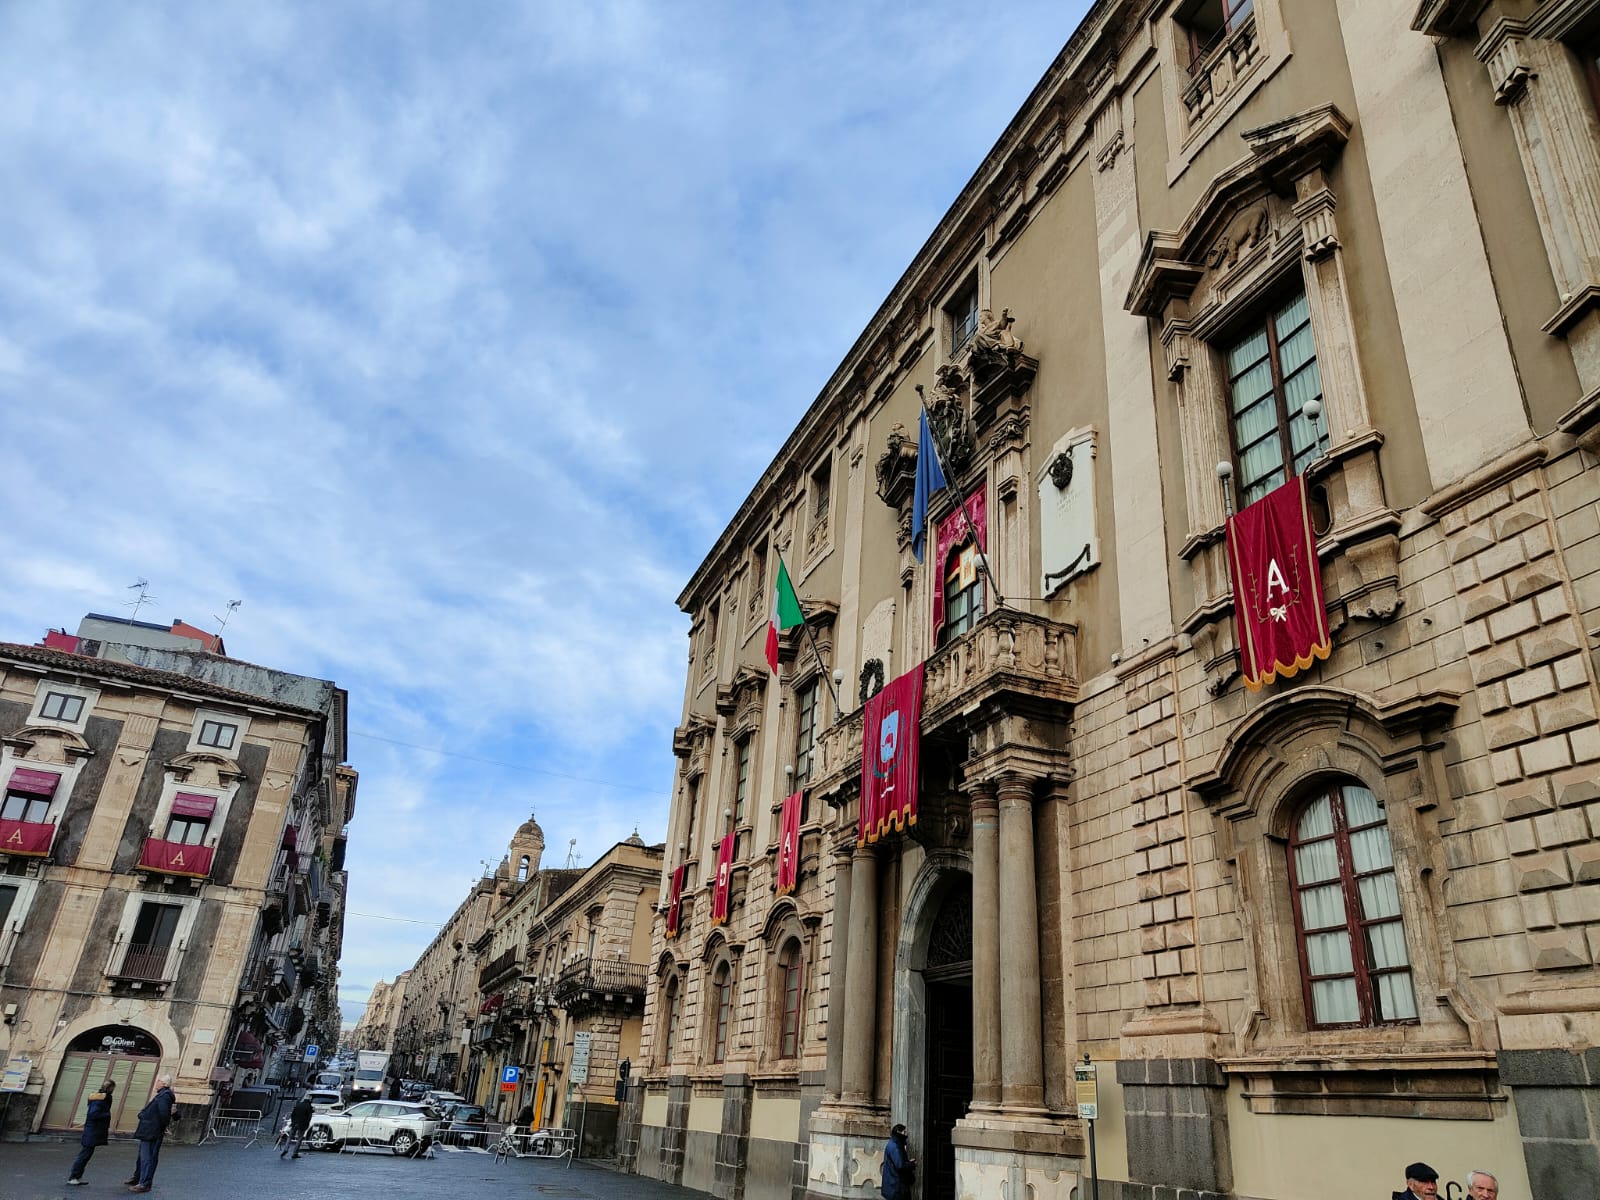 Sistema integrato dei controlli sulle società partecipate, il Consiglio comunale di Catania torna in Aula